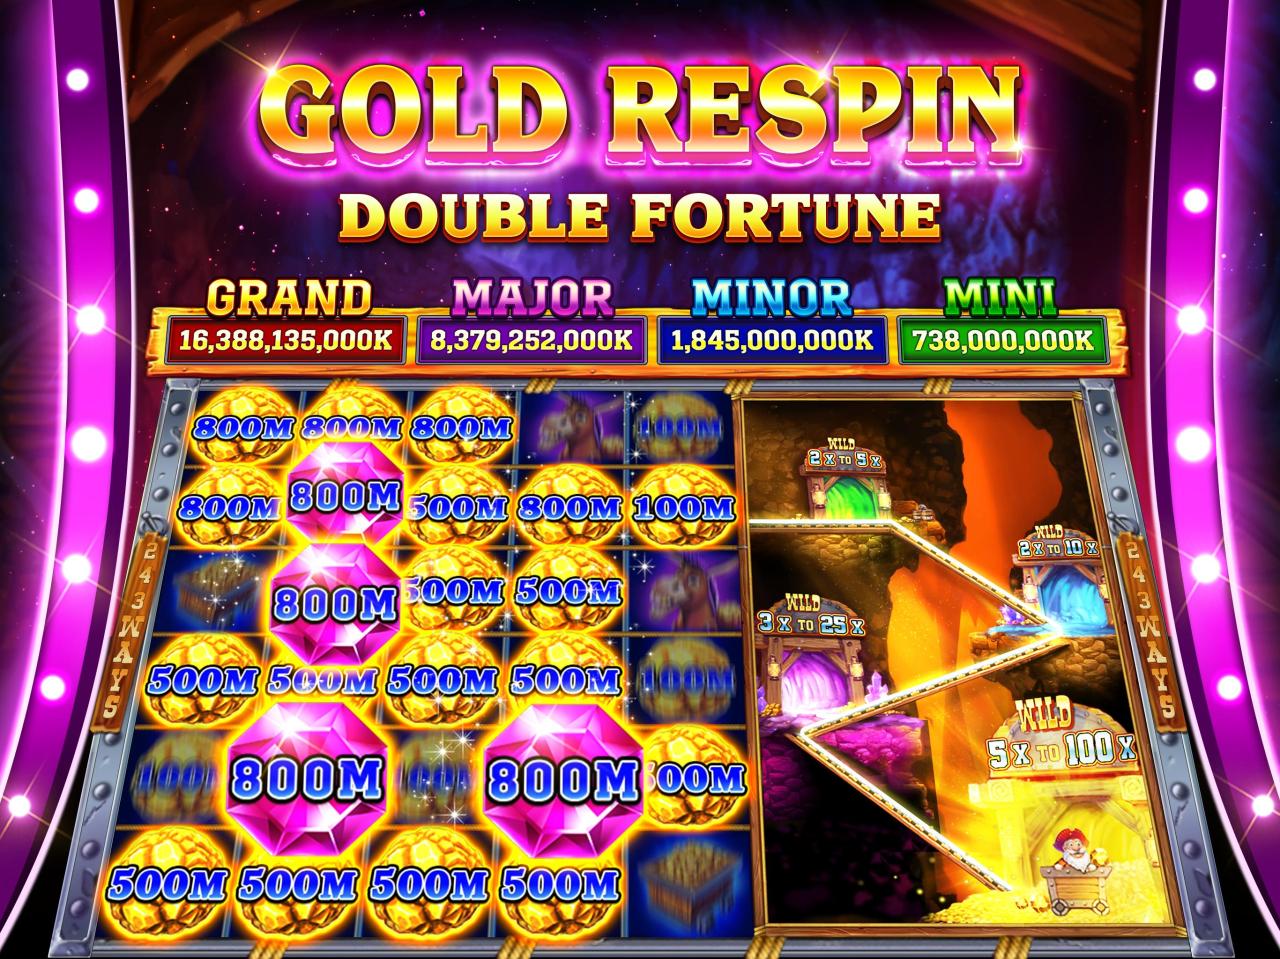 Tuklasin ang Nakatutuwang Mundo ng Online Casino Gaming kasama ang WinTrillions